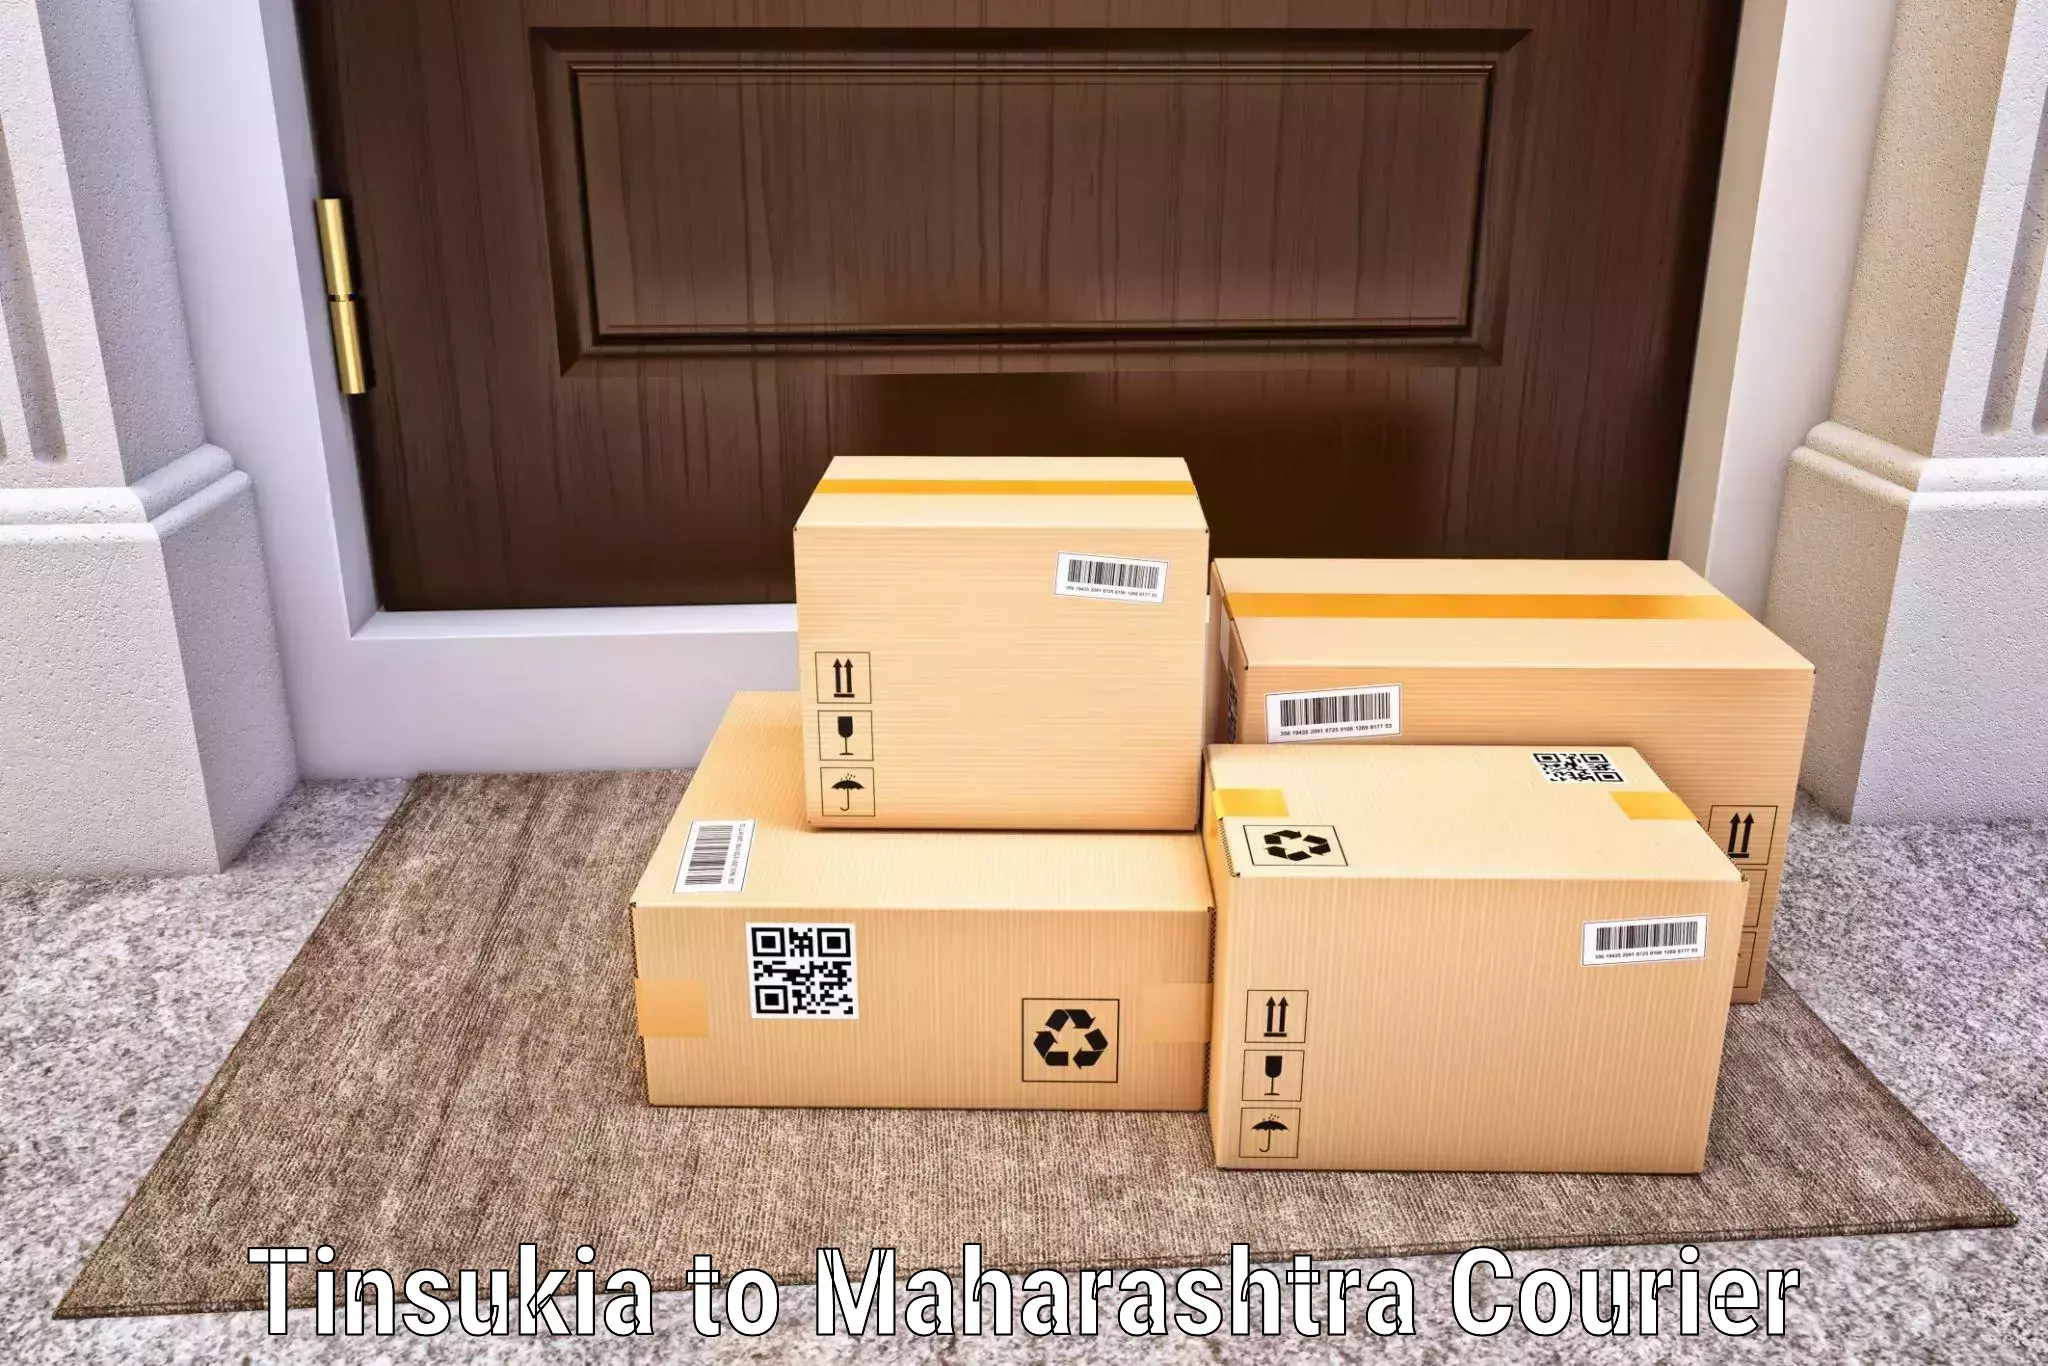 Digital courier platforms Tinsukia to Aheri